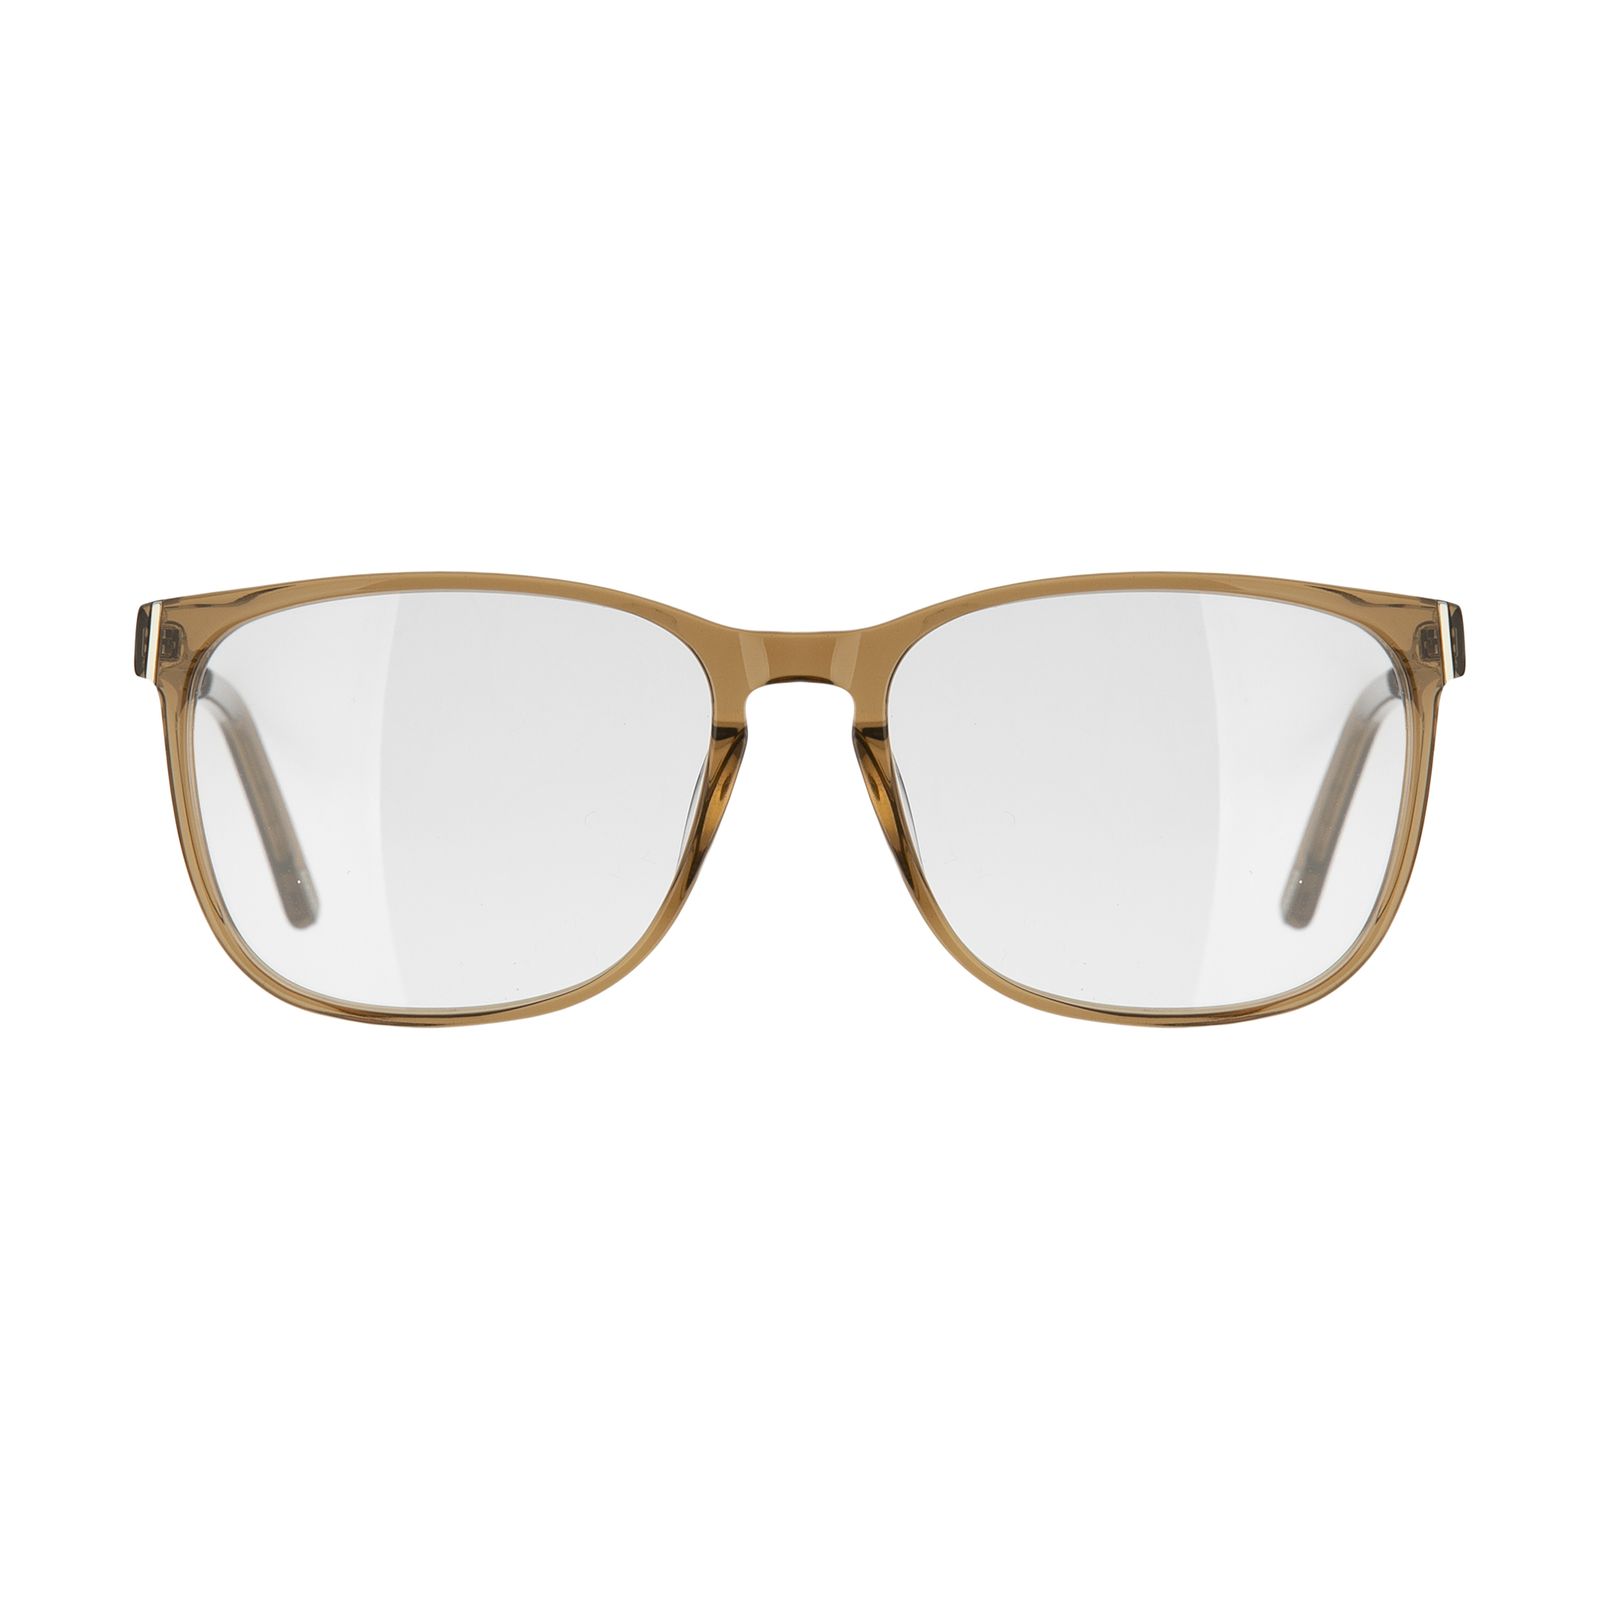 فریم عینک طبی ماسائو مدل 13169-551